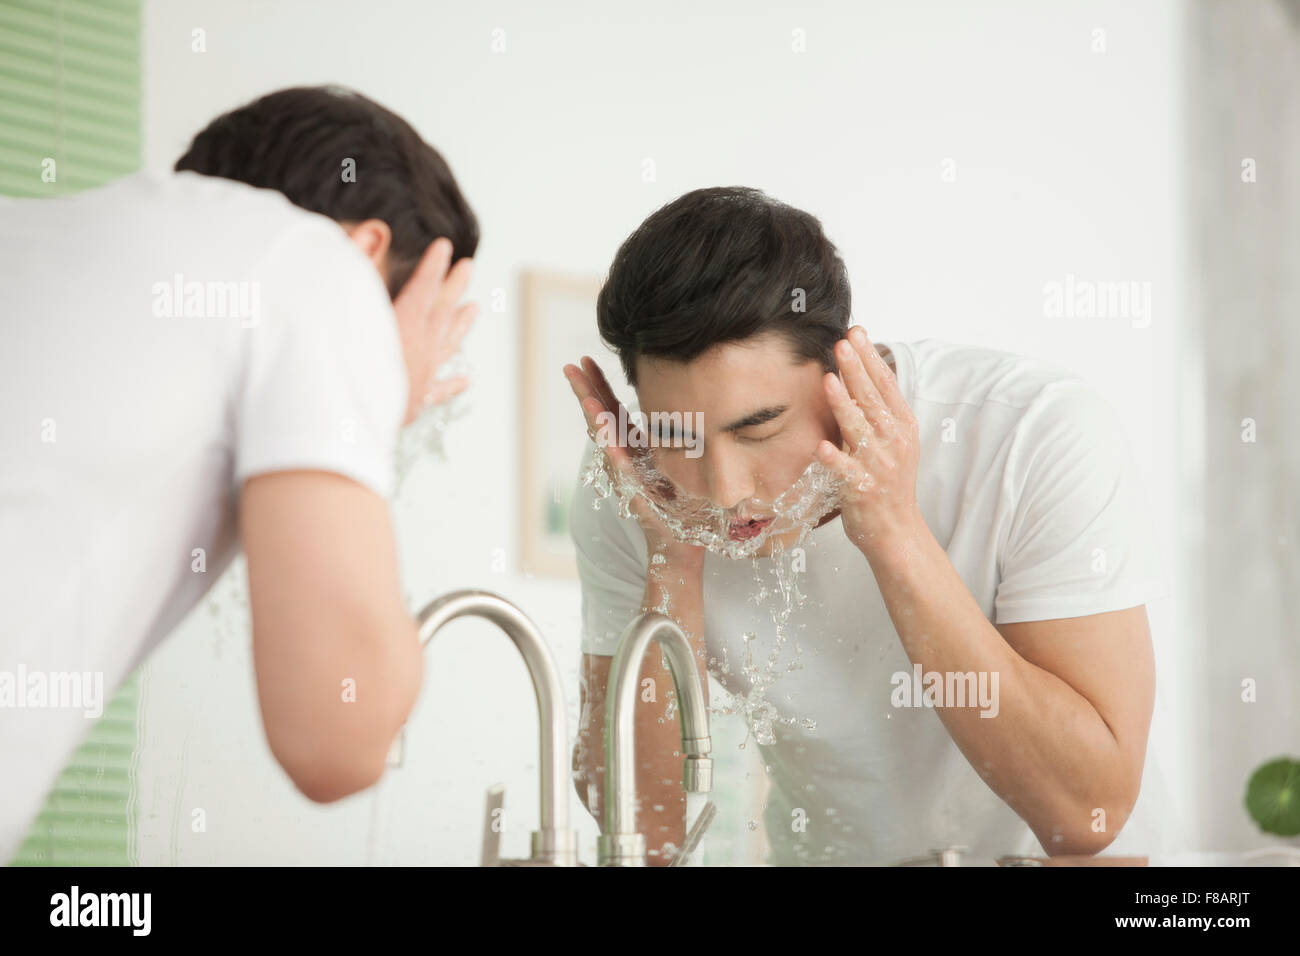 Porträt des jungen Mannes sein Gesicht am Waschbecken im Bad waschen Stockfoto